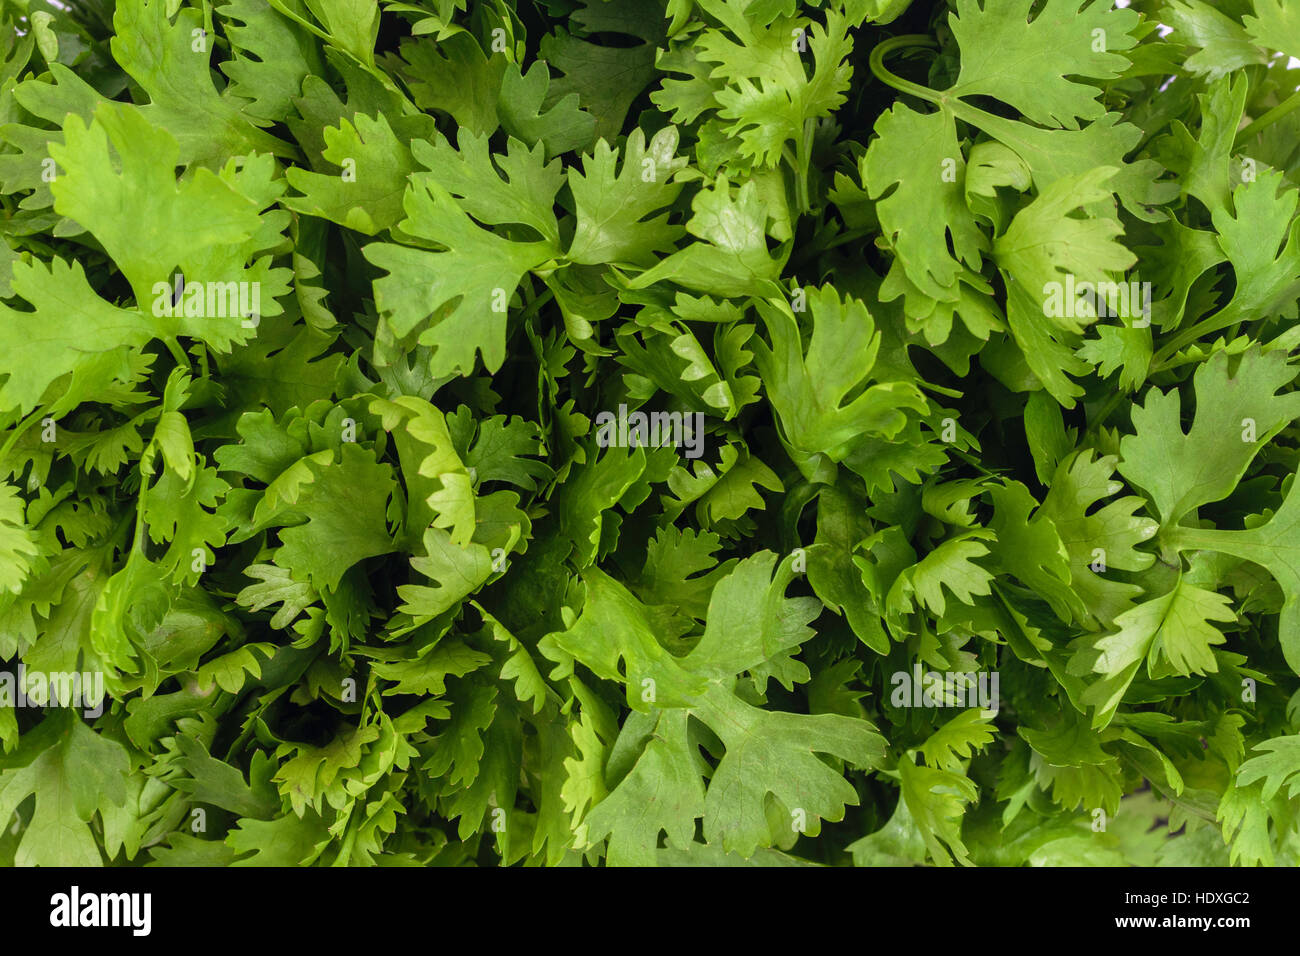 El Cilantro u hojas de cilantro (Coriandrum sativum) deja closeup antecedentes Foto de stock